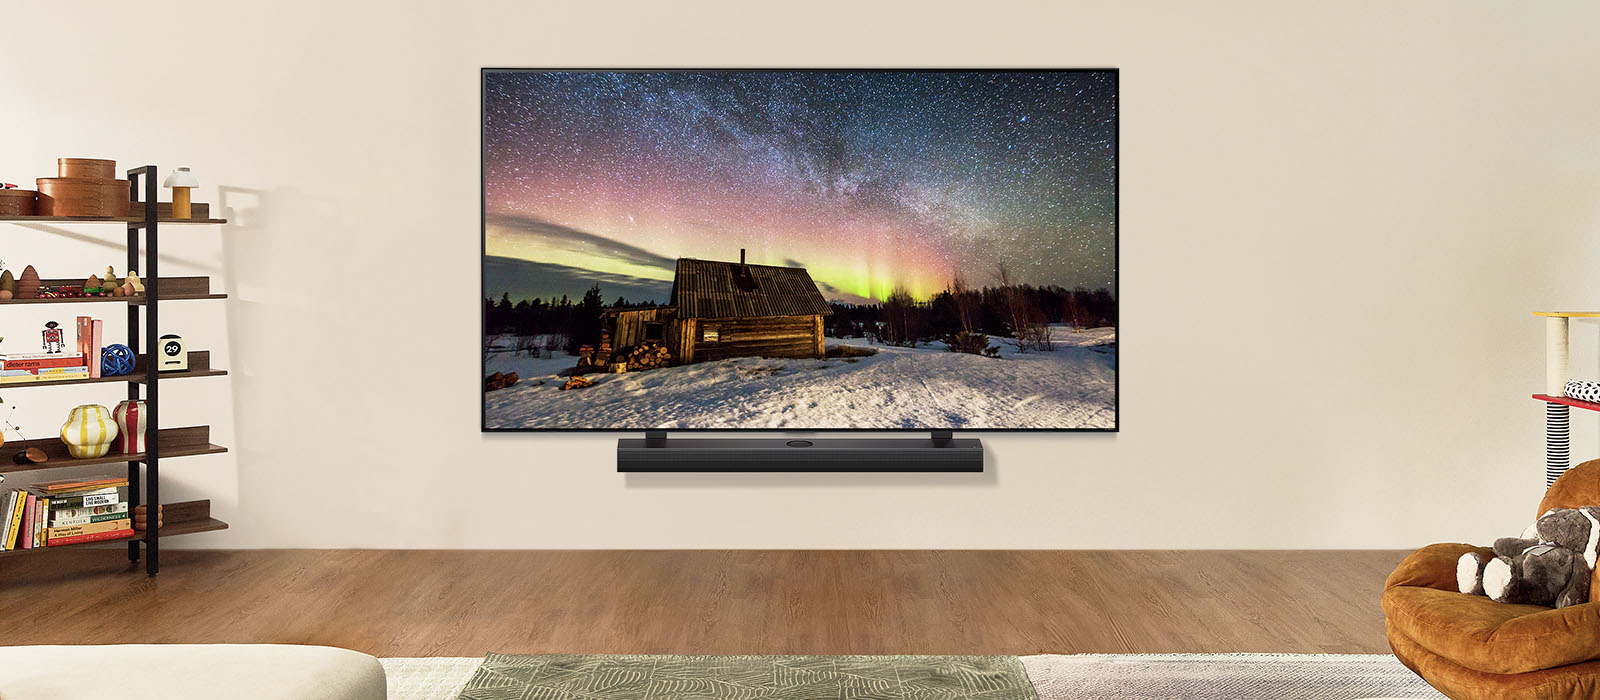 LG TV og LG-soundbar i et moderne hjem om natten. Billedet på skærmen af nordlyset vises med ideelle niveauer af lysstyrke.